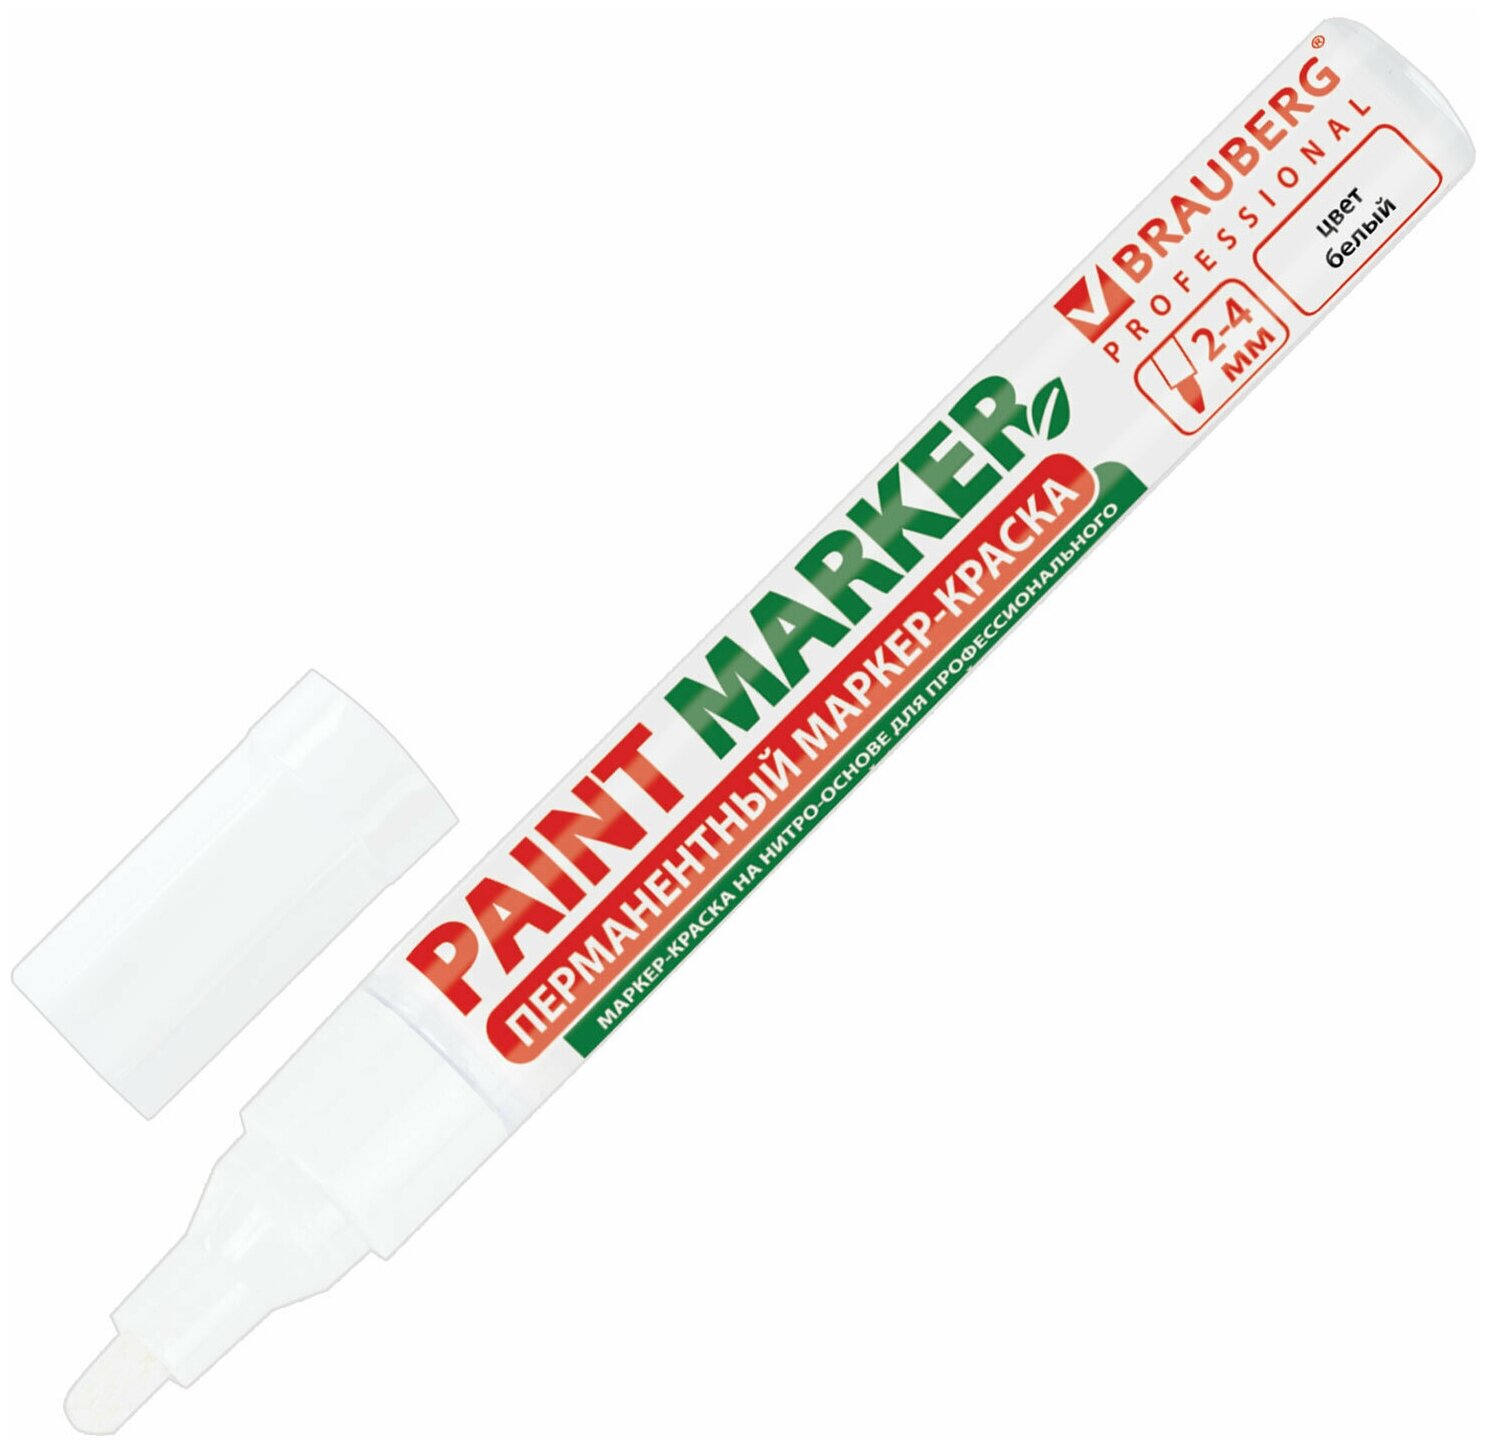 Маркер-краска лаковый (paint marker) 4 мм, белый, без ксилола (без запаха), алюминий, BRAUBERG PROFESSIONAL, 150878 /Квант продажи 1 ед./